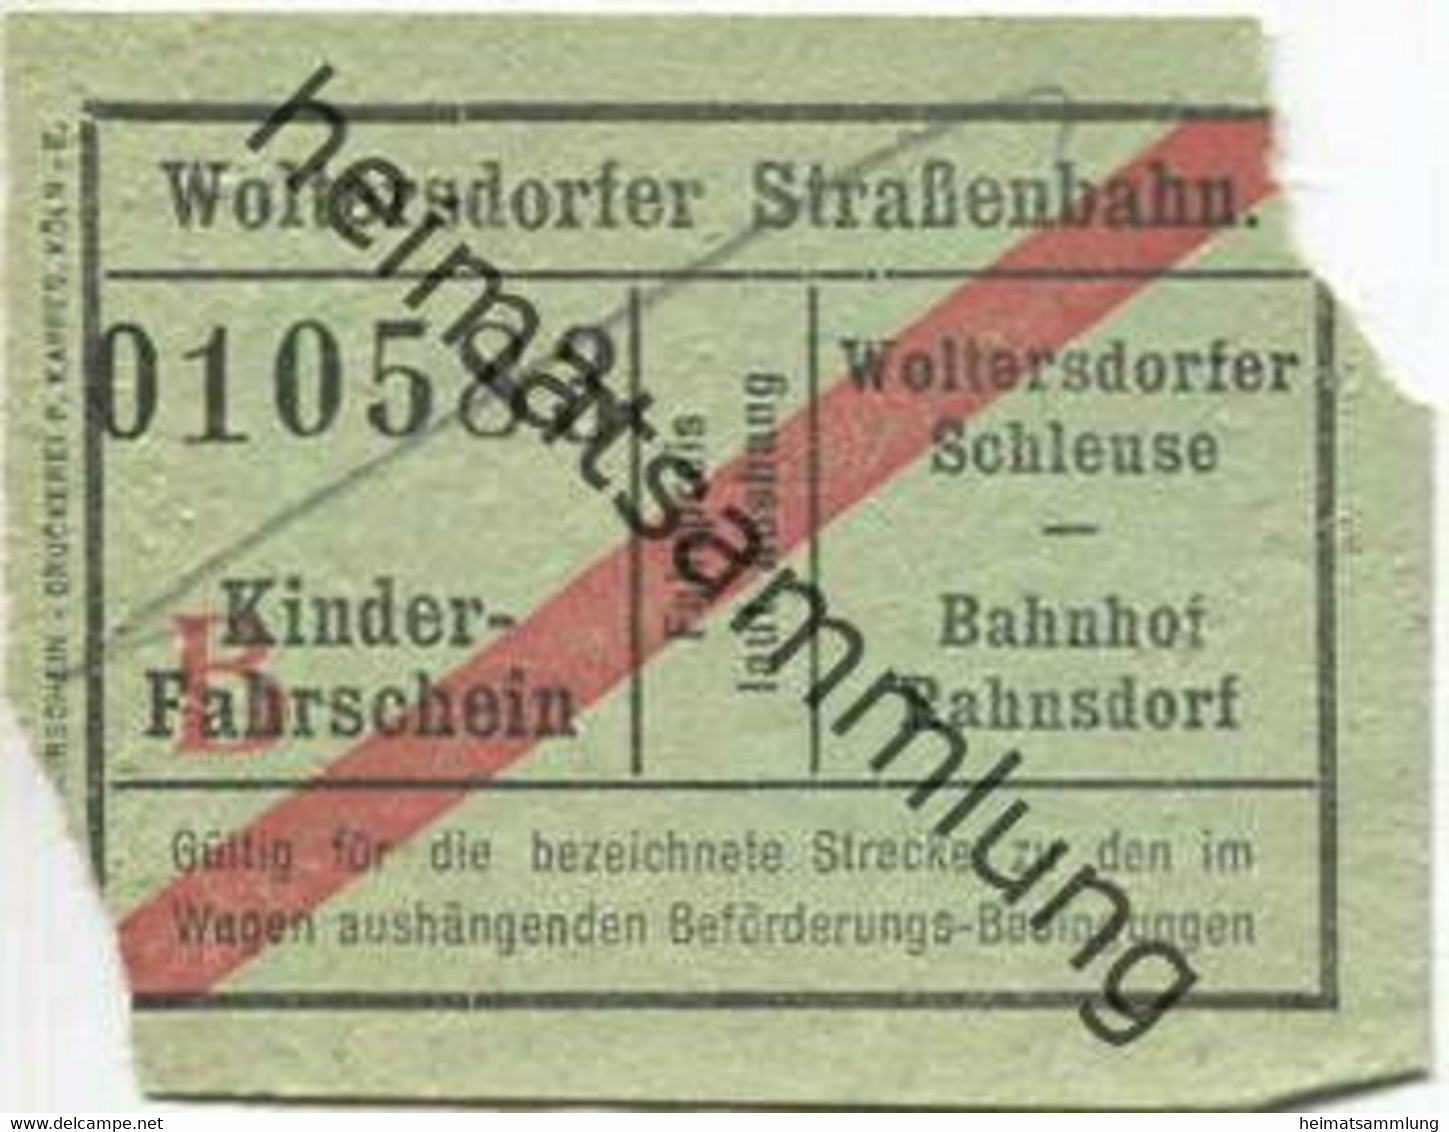 Deutschland - Woltersdorf - Woltersdorfer Strassenbahn - Fahrschein Wolterdorfer Schleuse Bahnhof Rahnsdorf - Kinderfahr - Europa